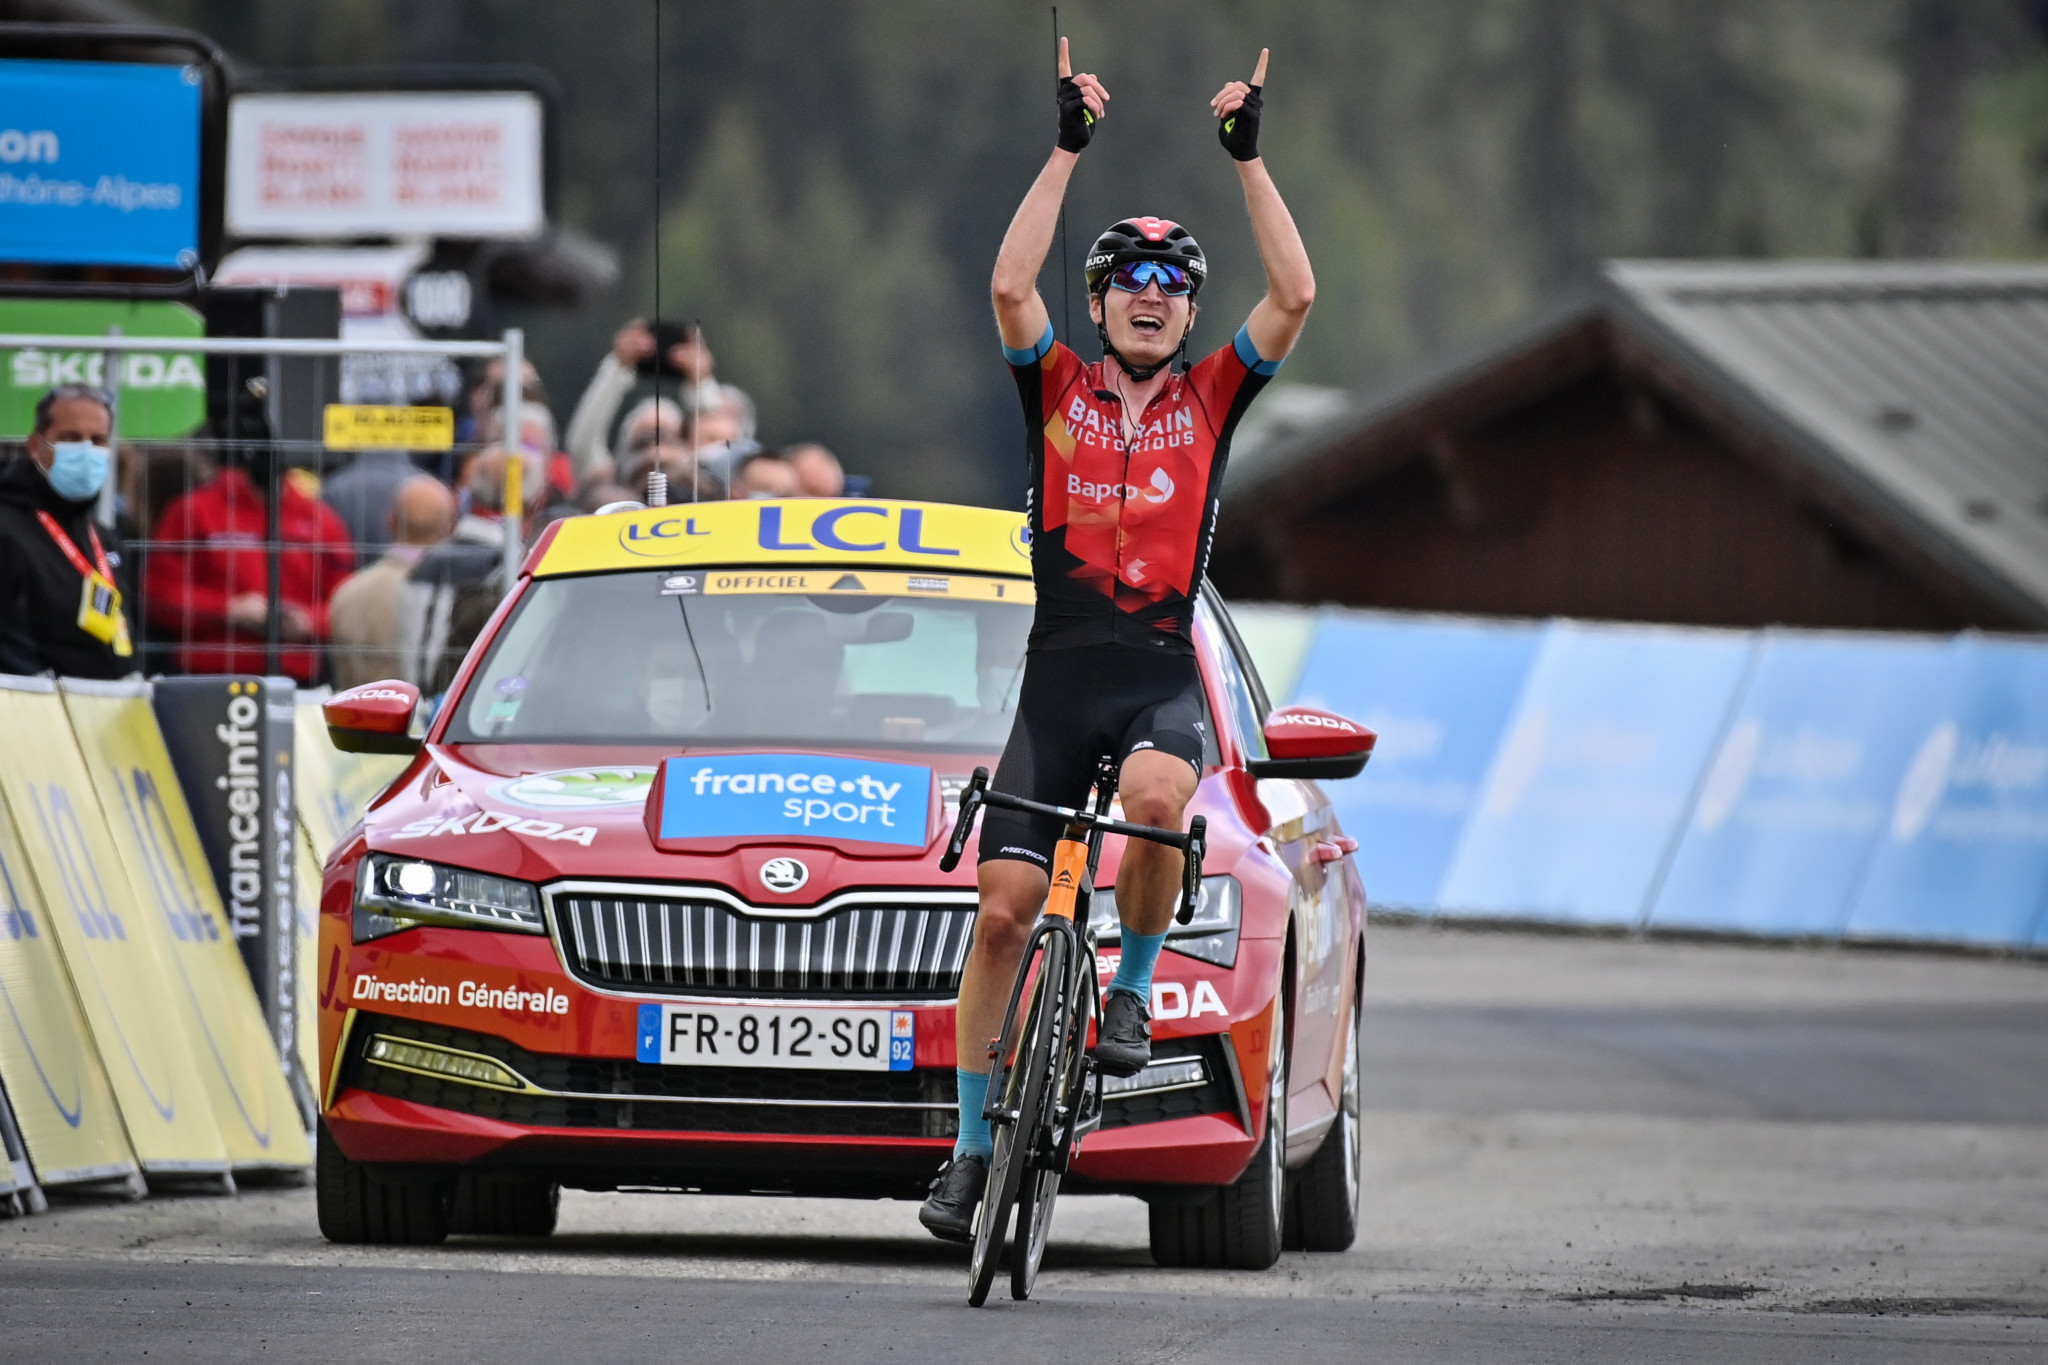 Ukraine’s Mark Padun won stage seven at La Plagne ©Getty Images